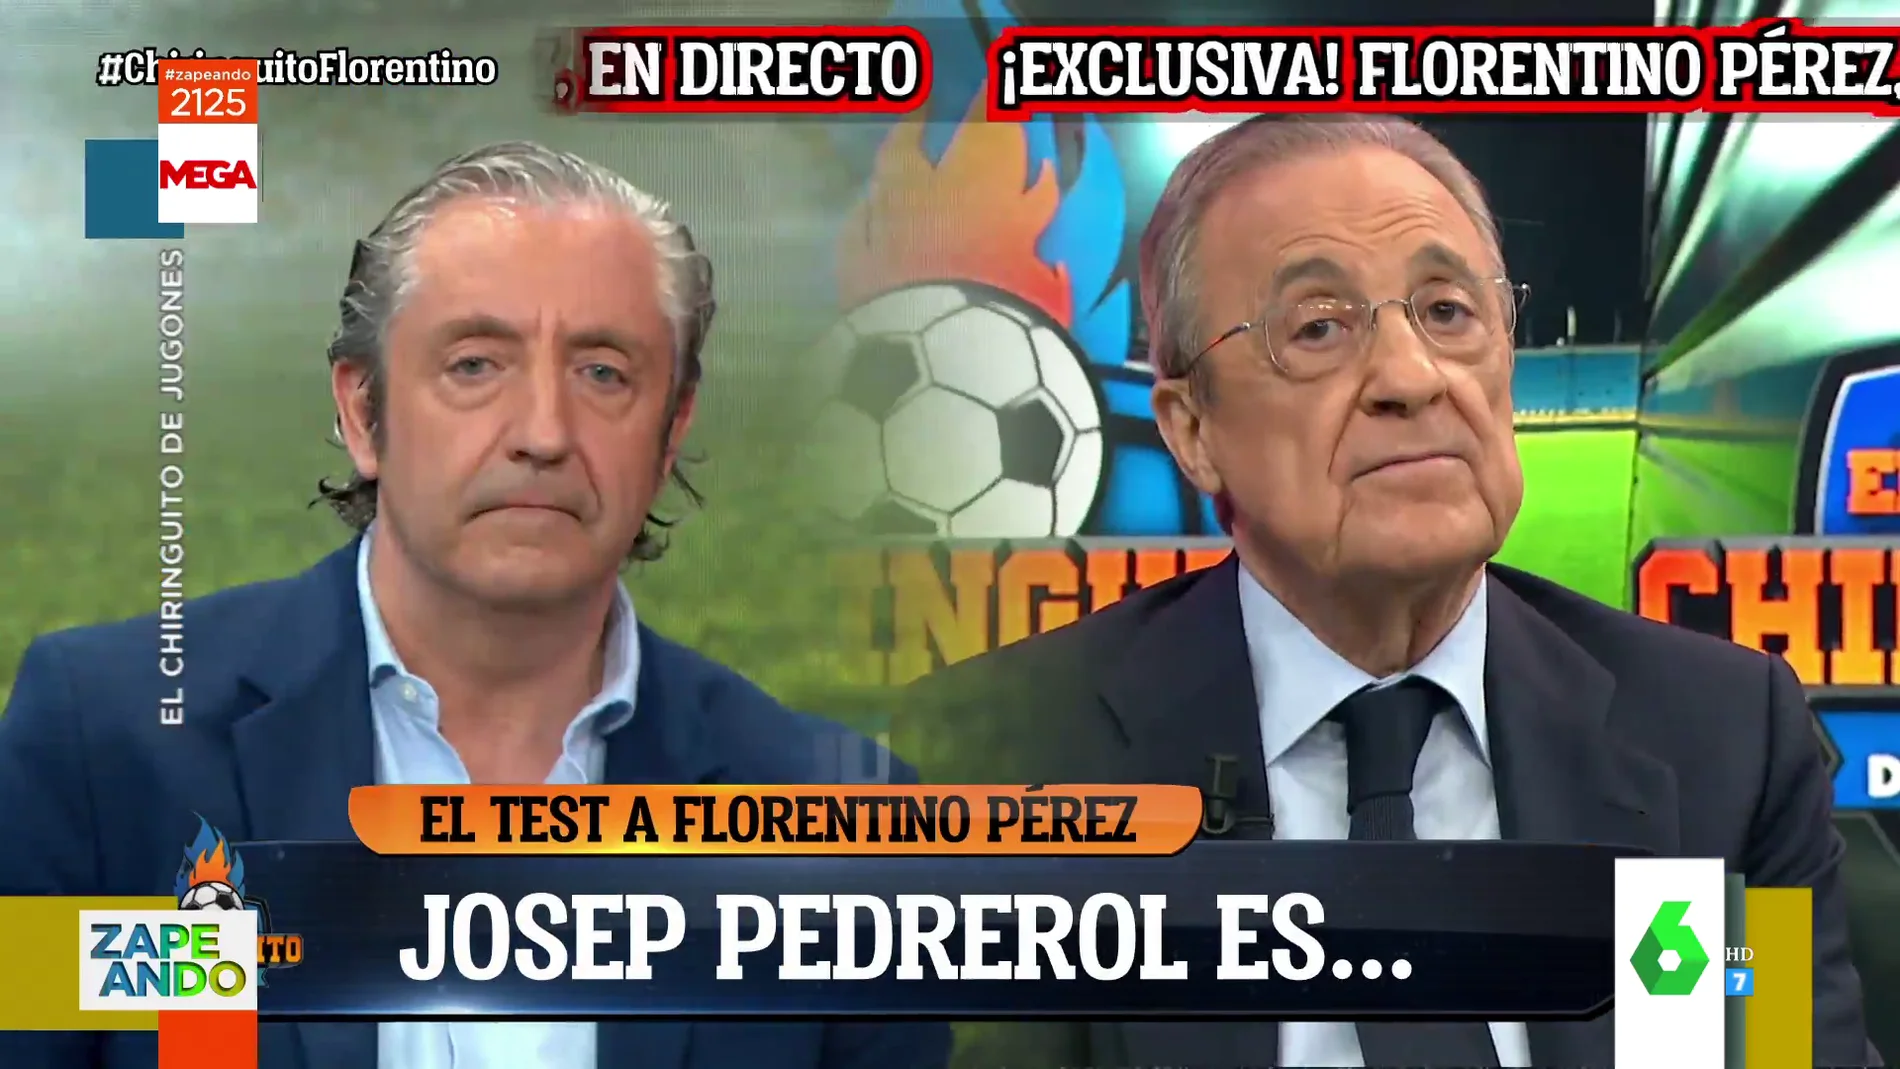 La de Josep Pedrerol cuando Florentino Pérez le define con esta palabra pleno directo de El Chiringuito